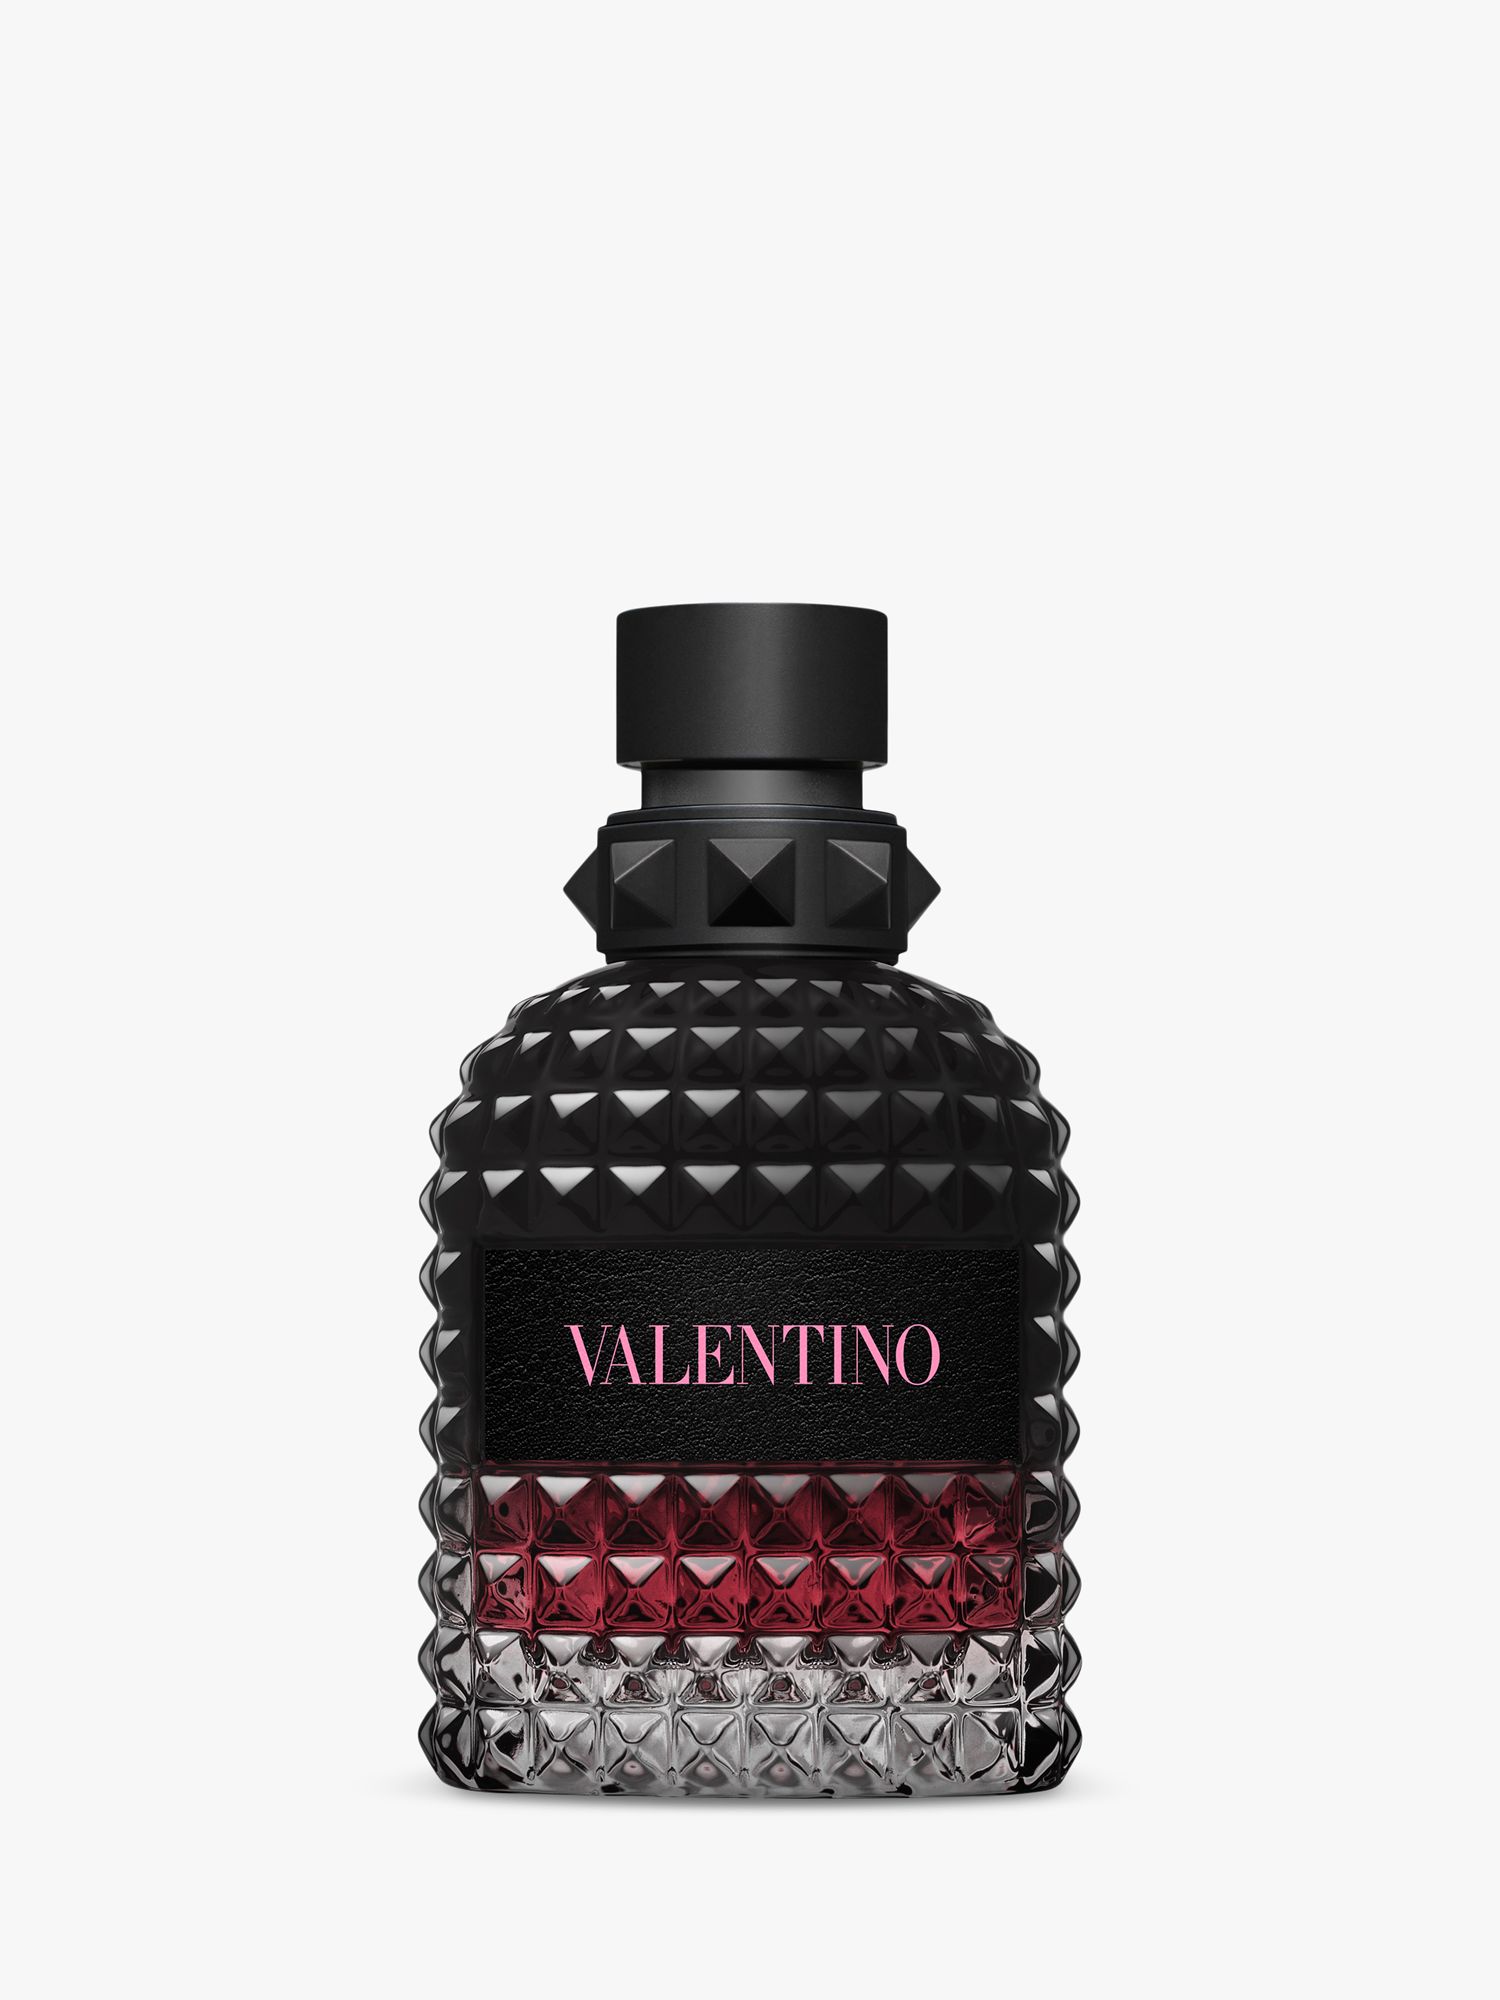 Valentino Born In Roma Uomo Eau de Parfum Intense, 50ml